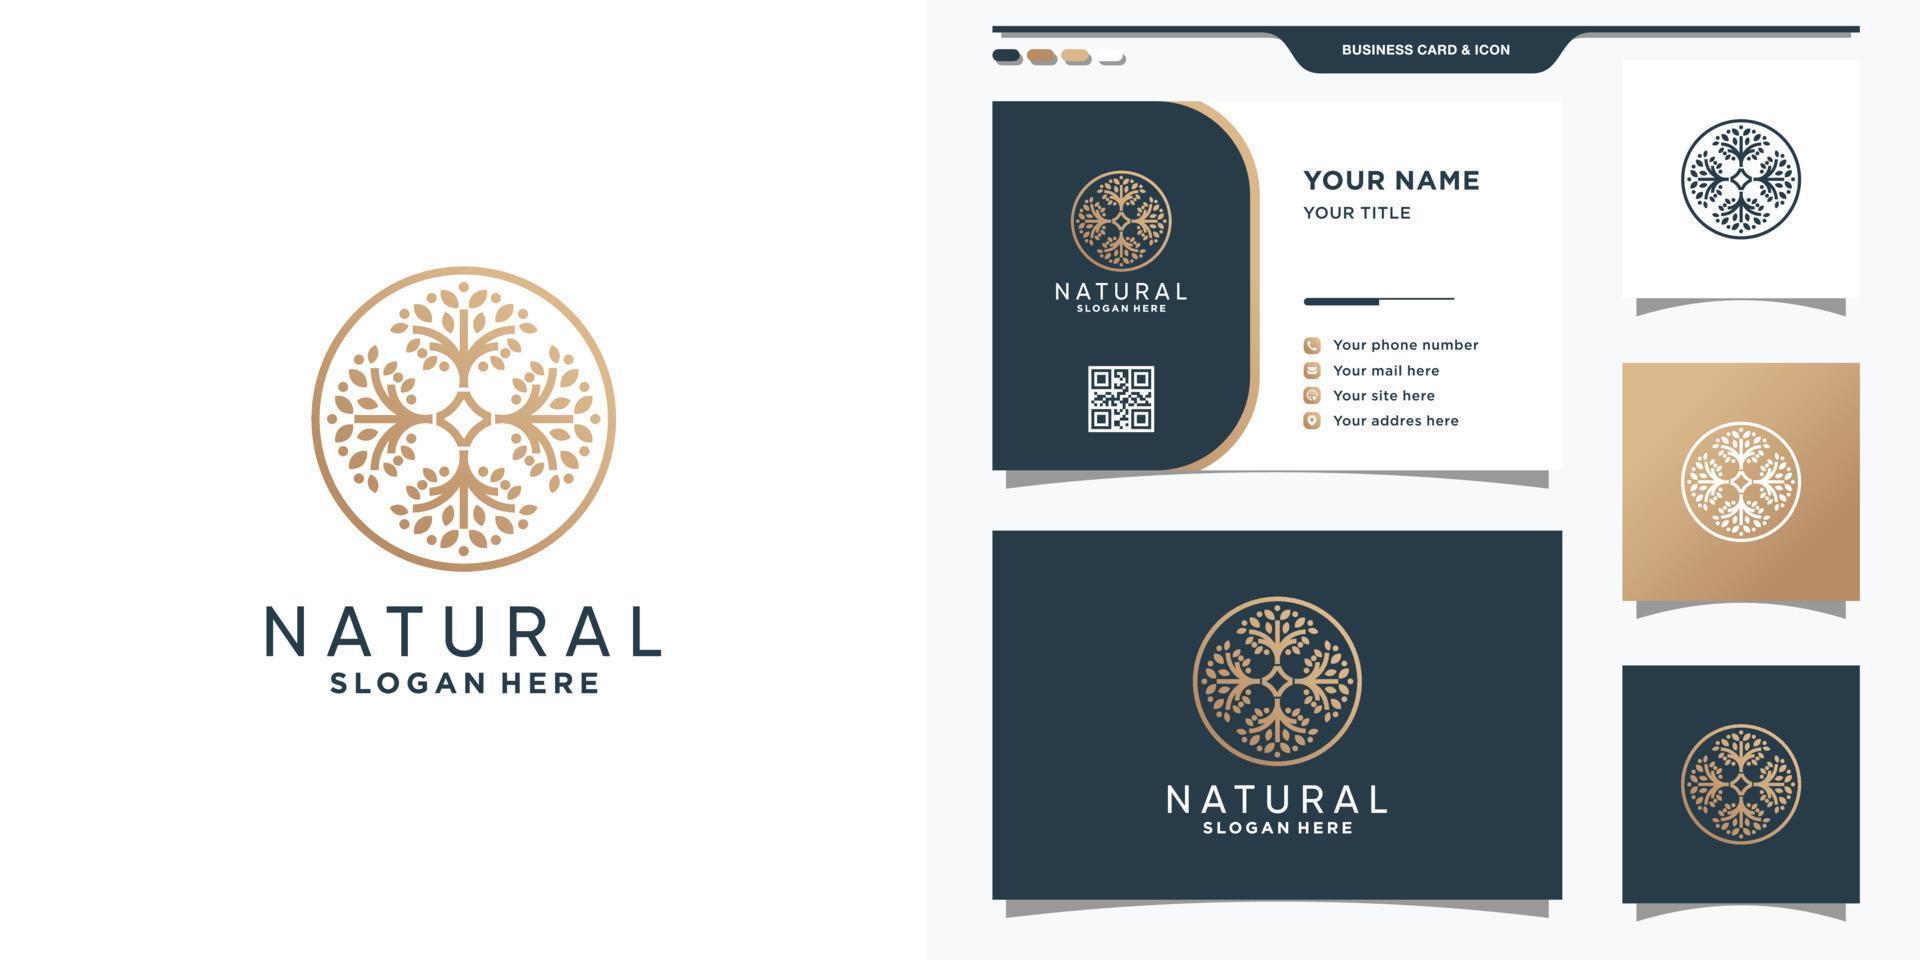 Naturbaum-Logo-Vorlage mit Kreiskonzept und Visitenkarten-Design-Premium-Vektor vektor